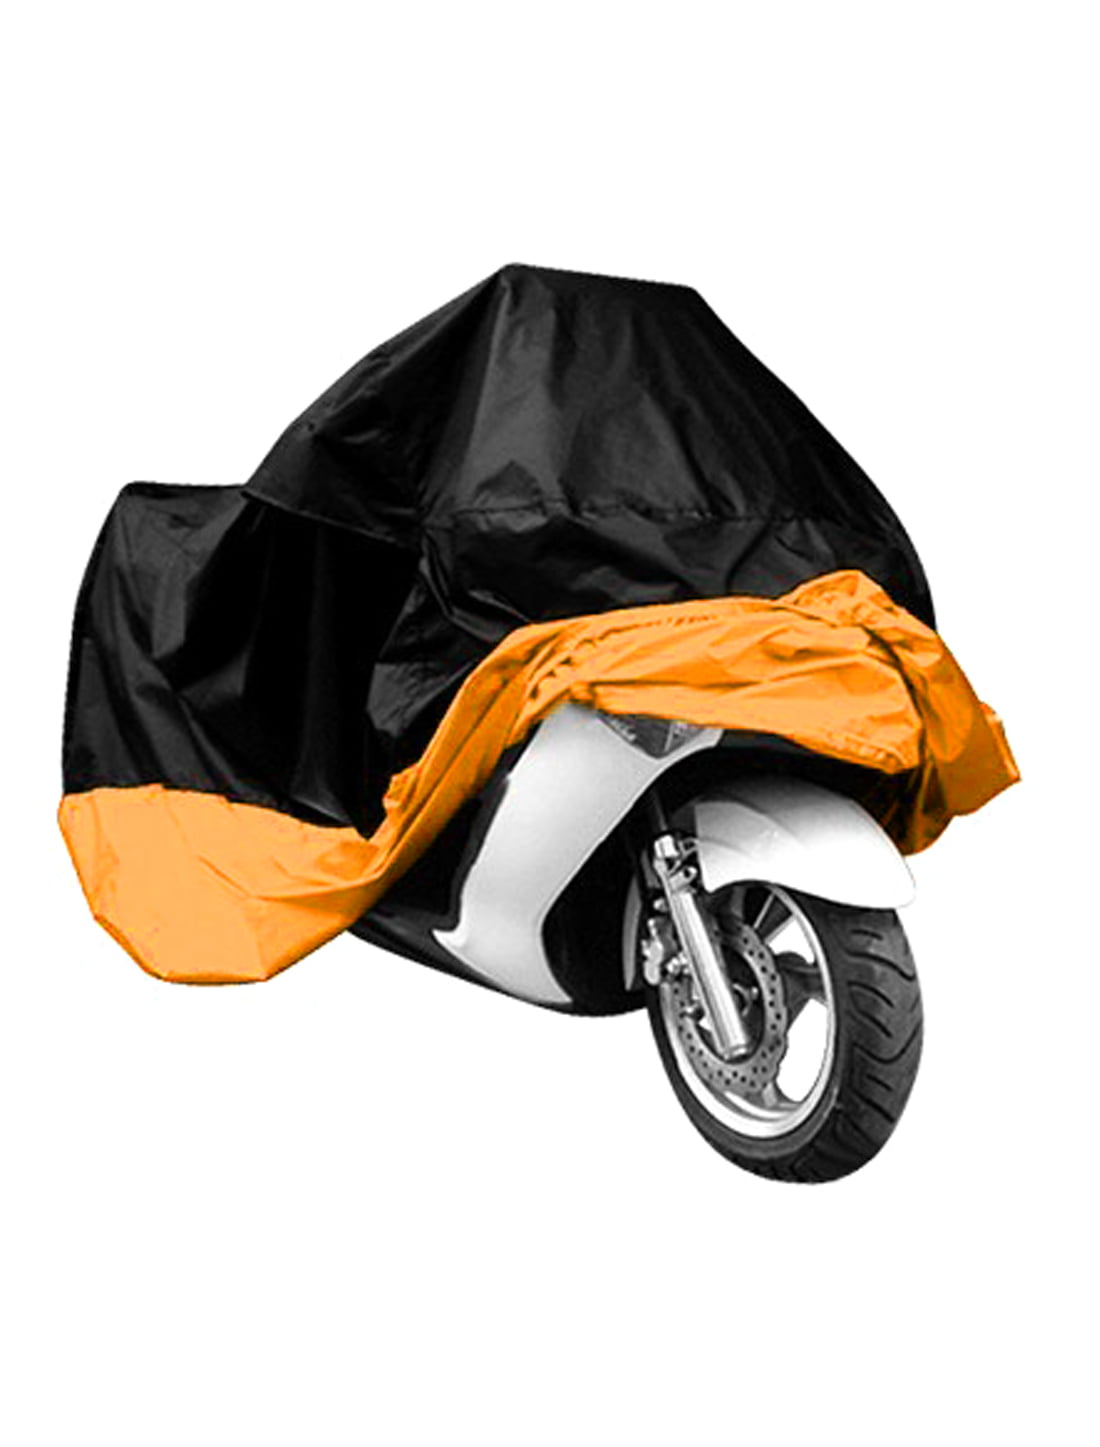 Housse De Moto,Housse Protection pour Moto L XL Size Moto Demi Couverture Universelle 210T extérieure étanche Anti-poussière Pluie poussière UV Protecteur de Moto Bike Color : L